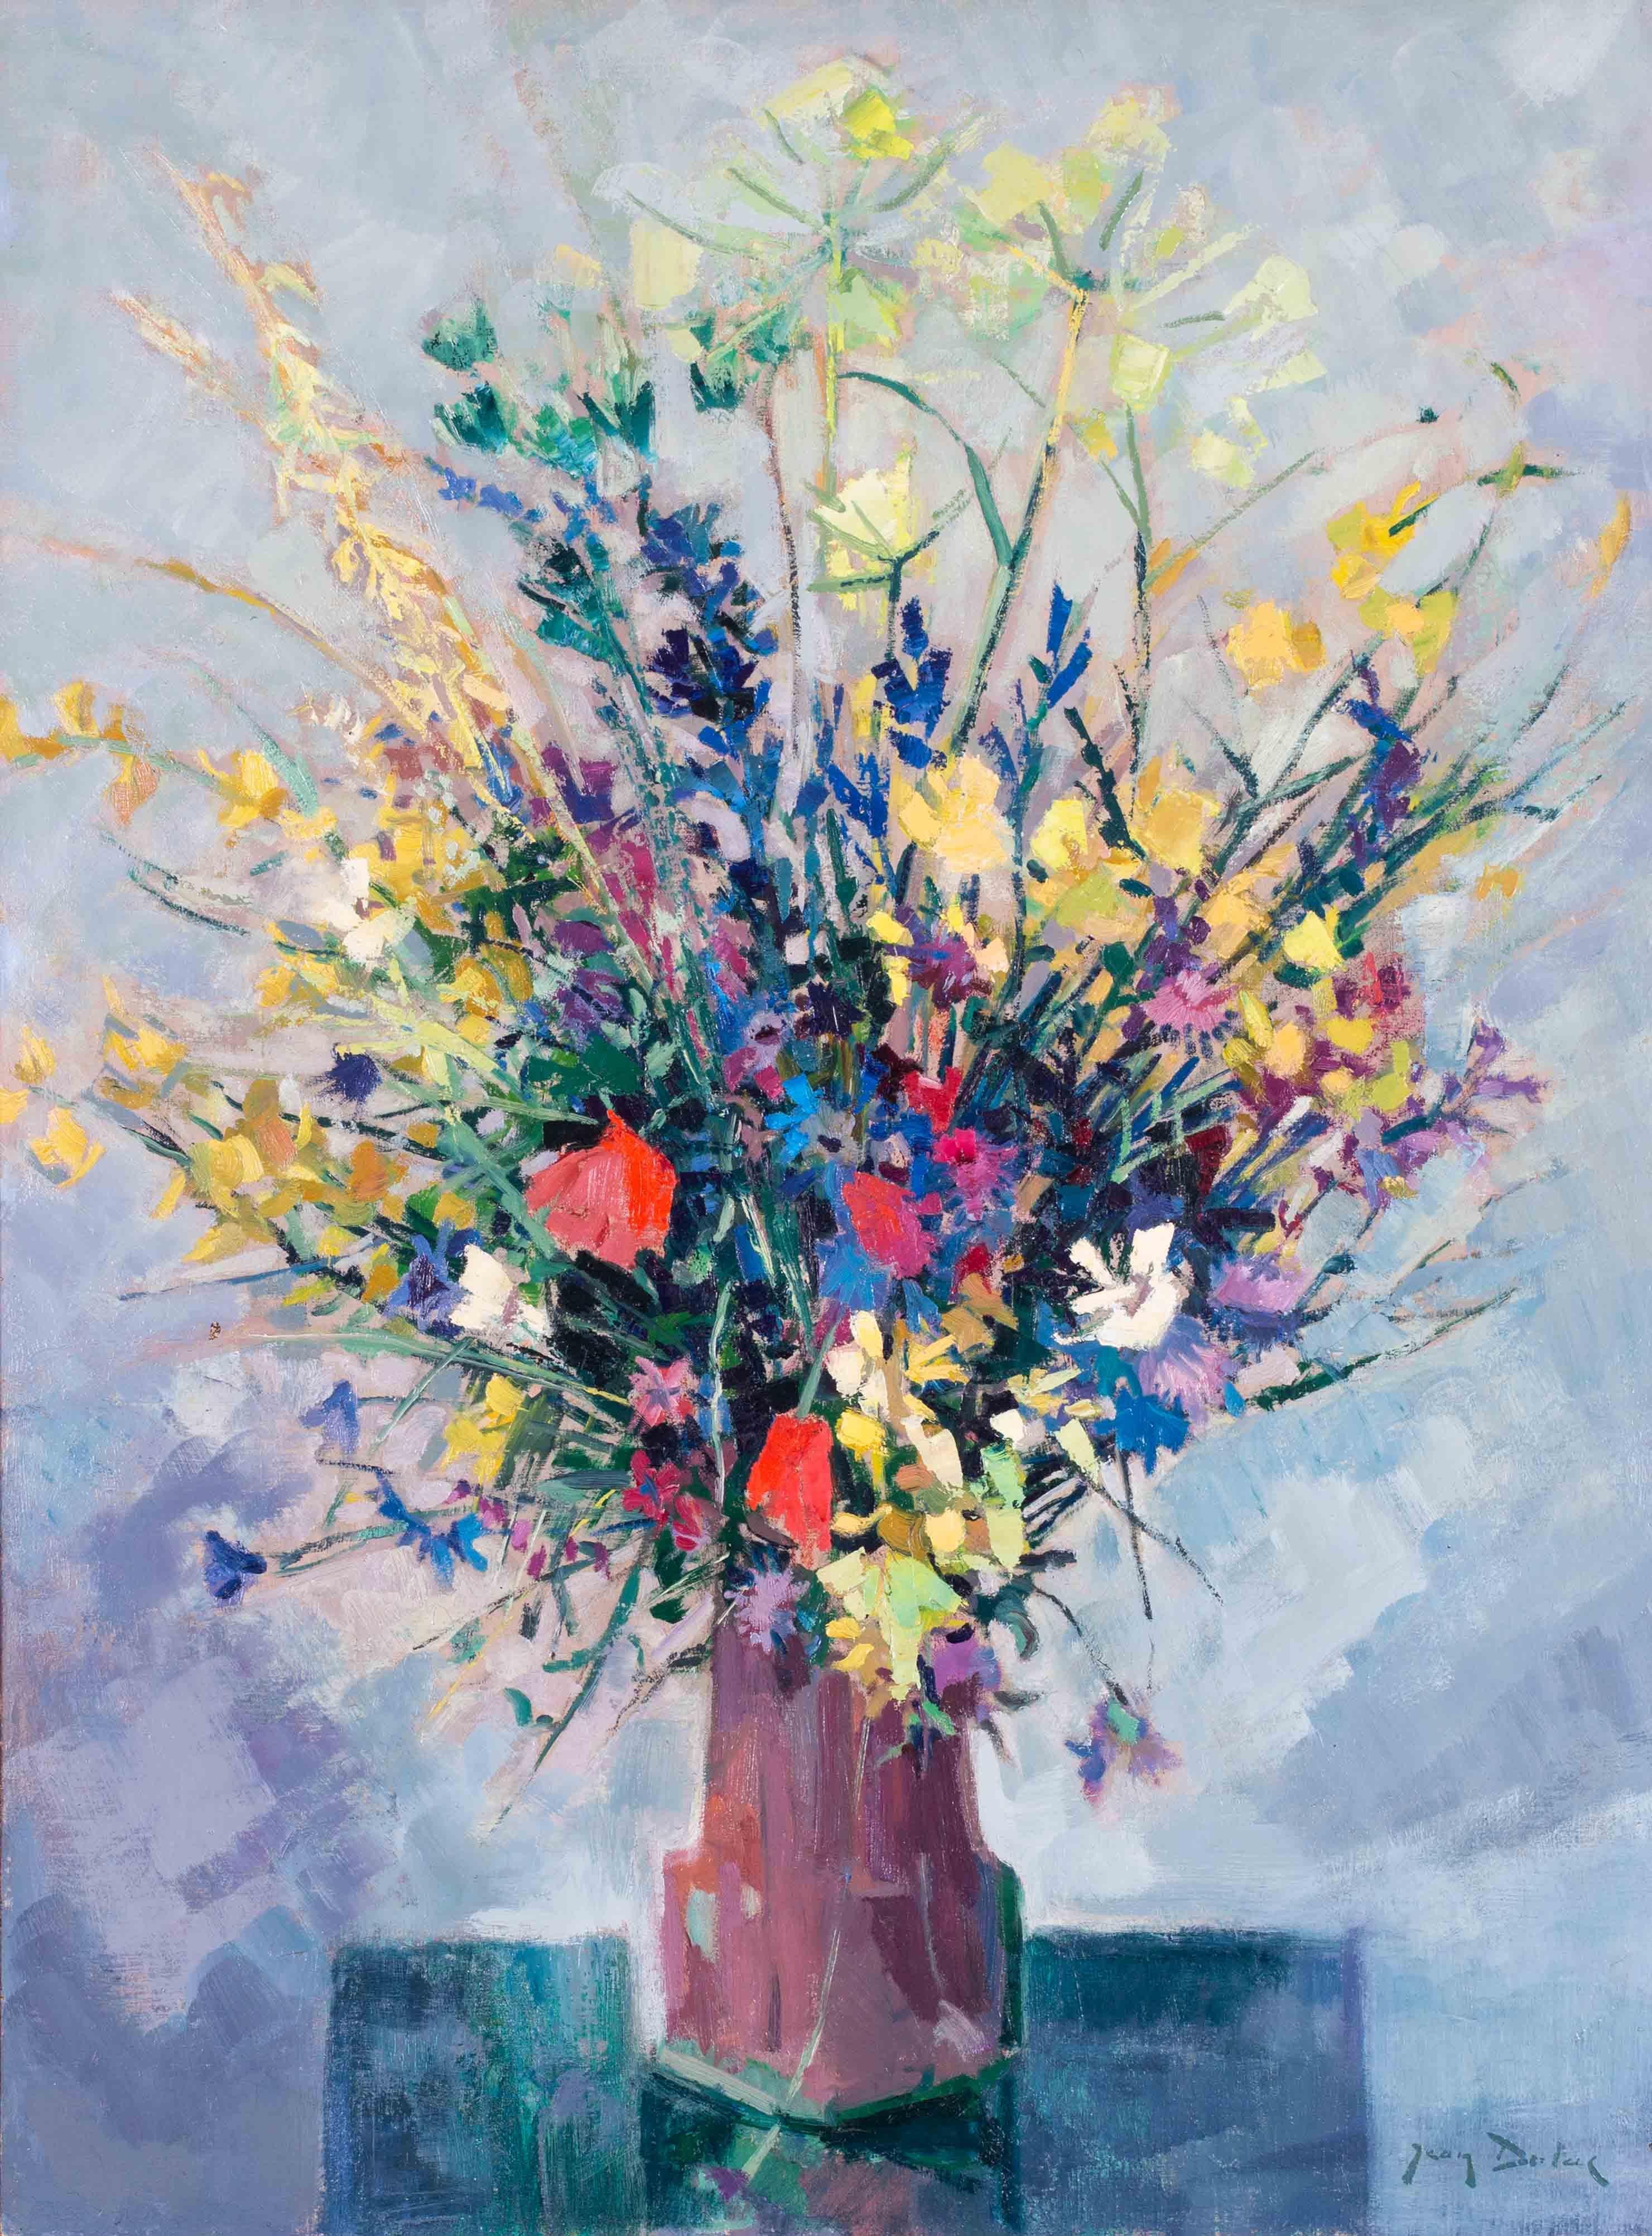 1962 Postimpressionistisches französisches Stillleben mit einer Blumenvase von Dulac – Painting von Jean Dulac